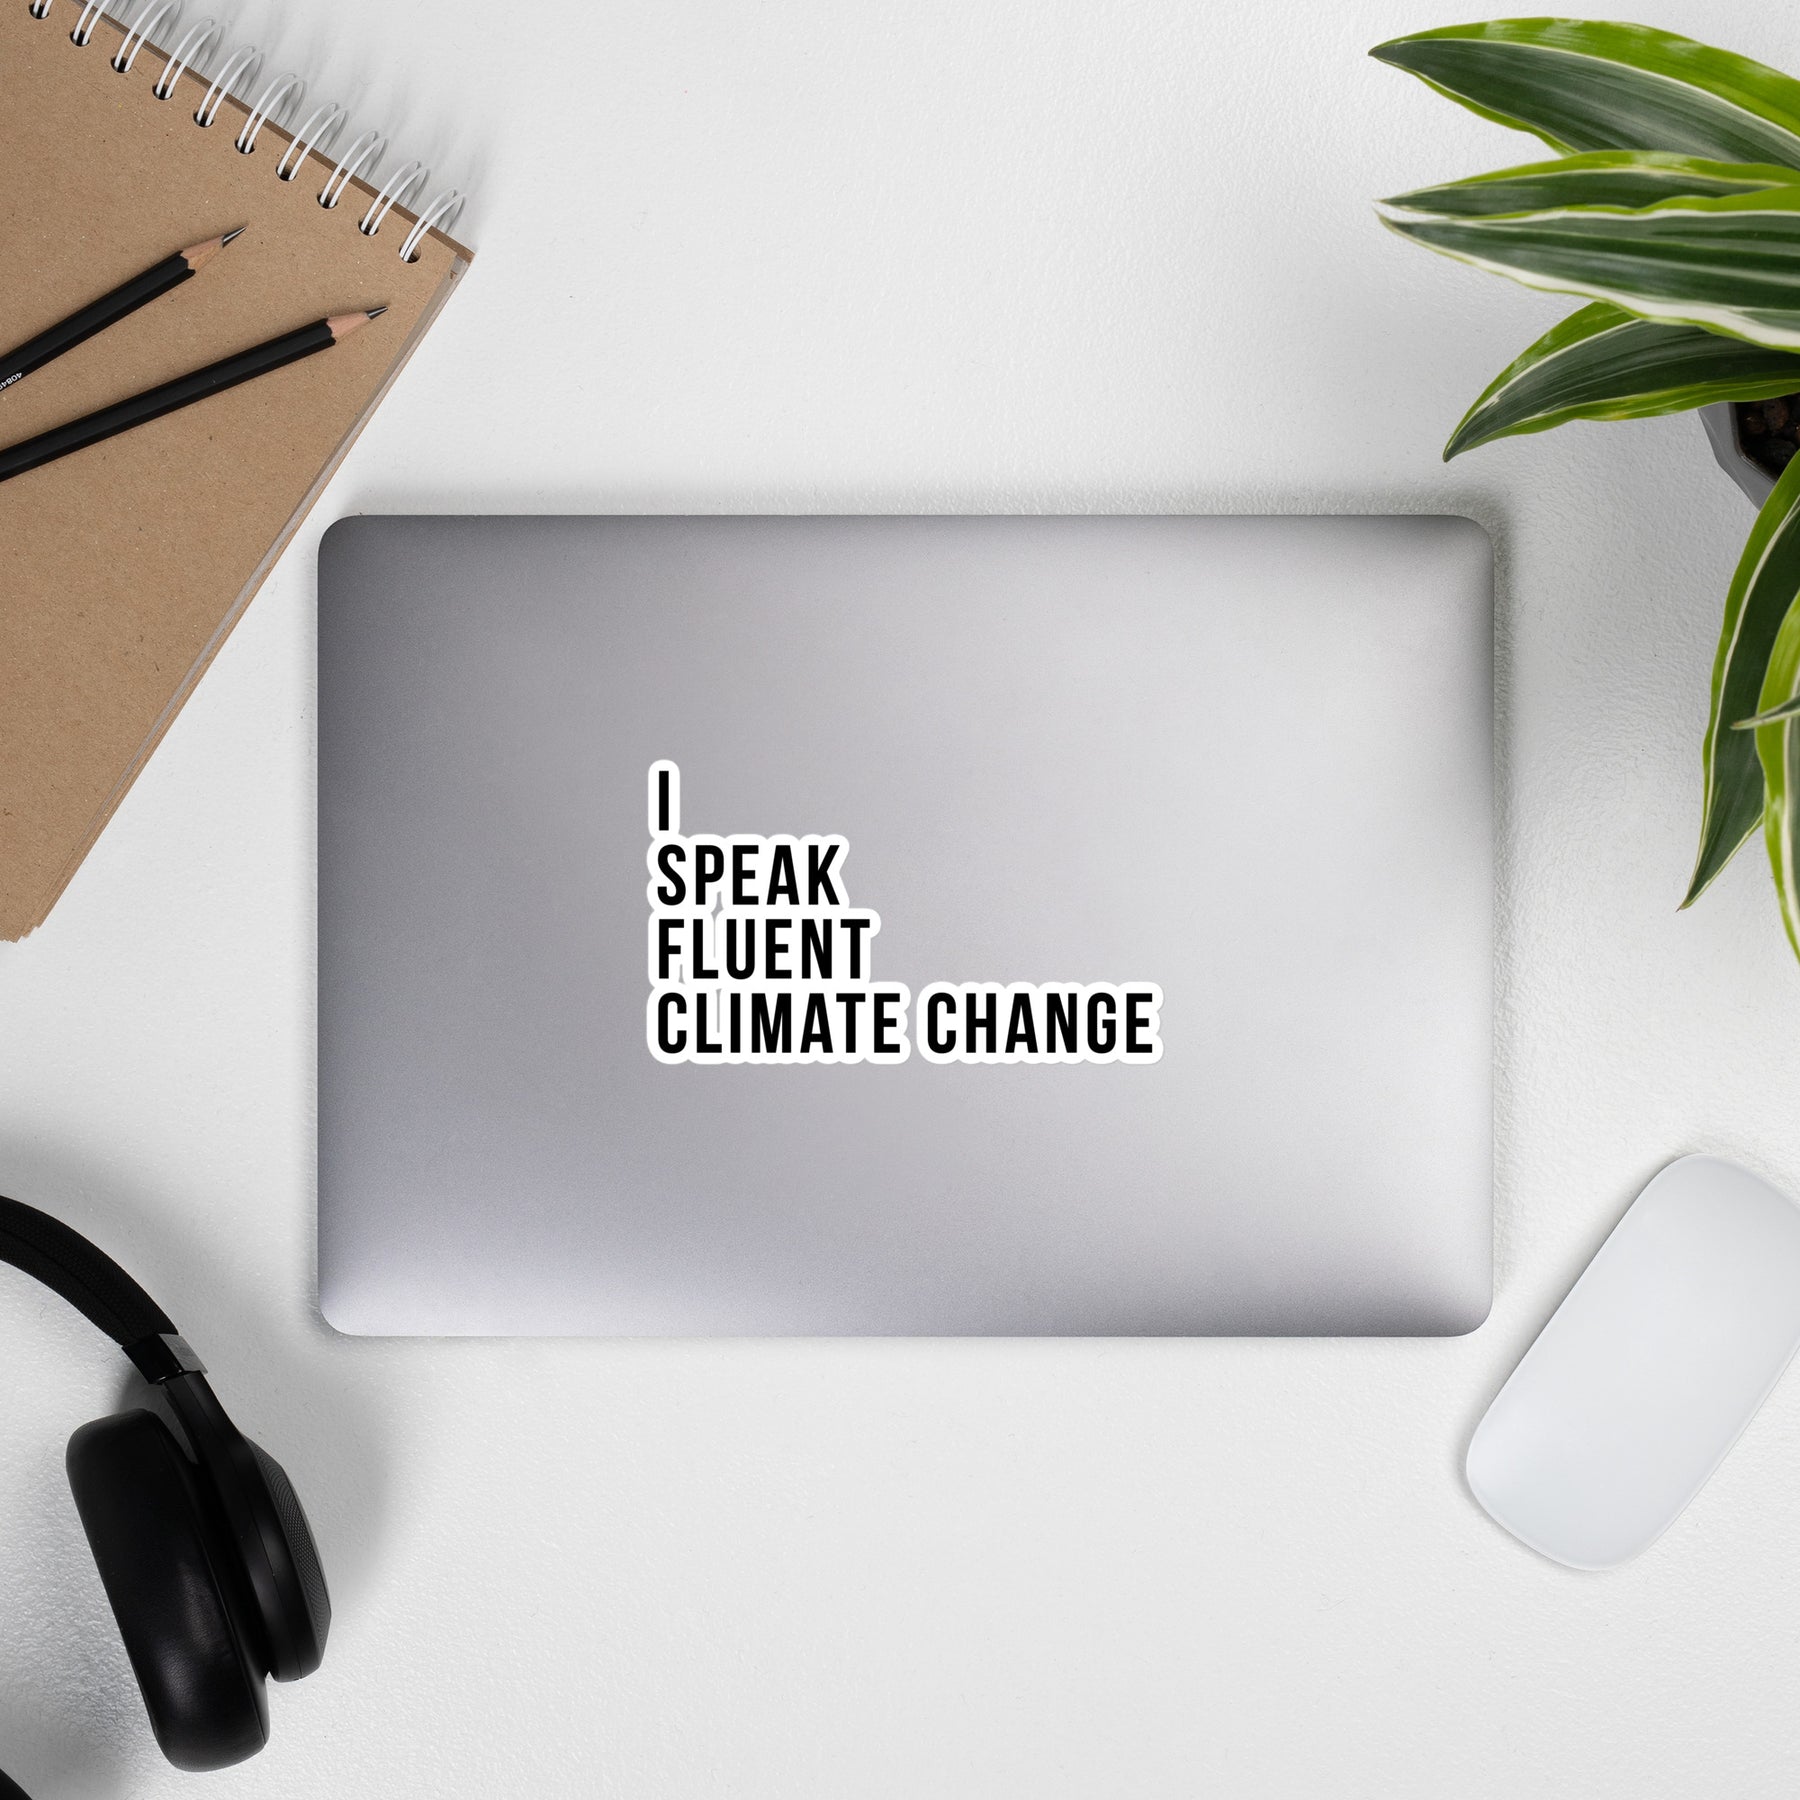 FLUENT CLIMATE CHANGE Sticker